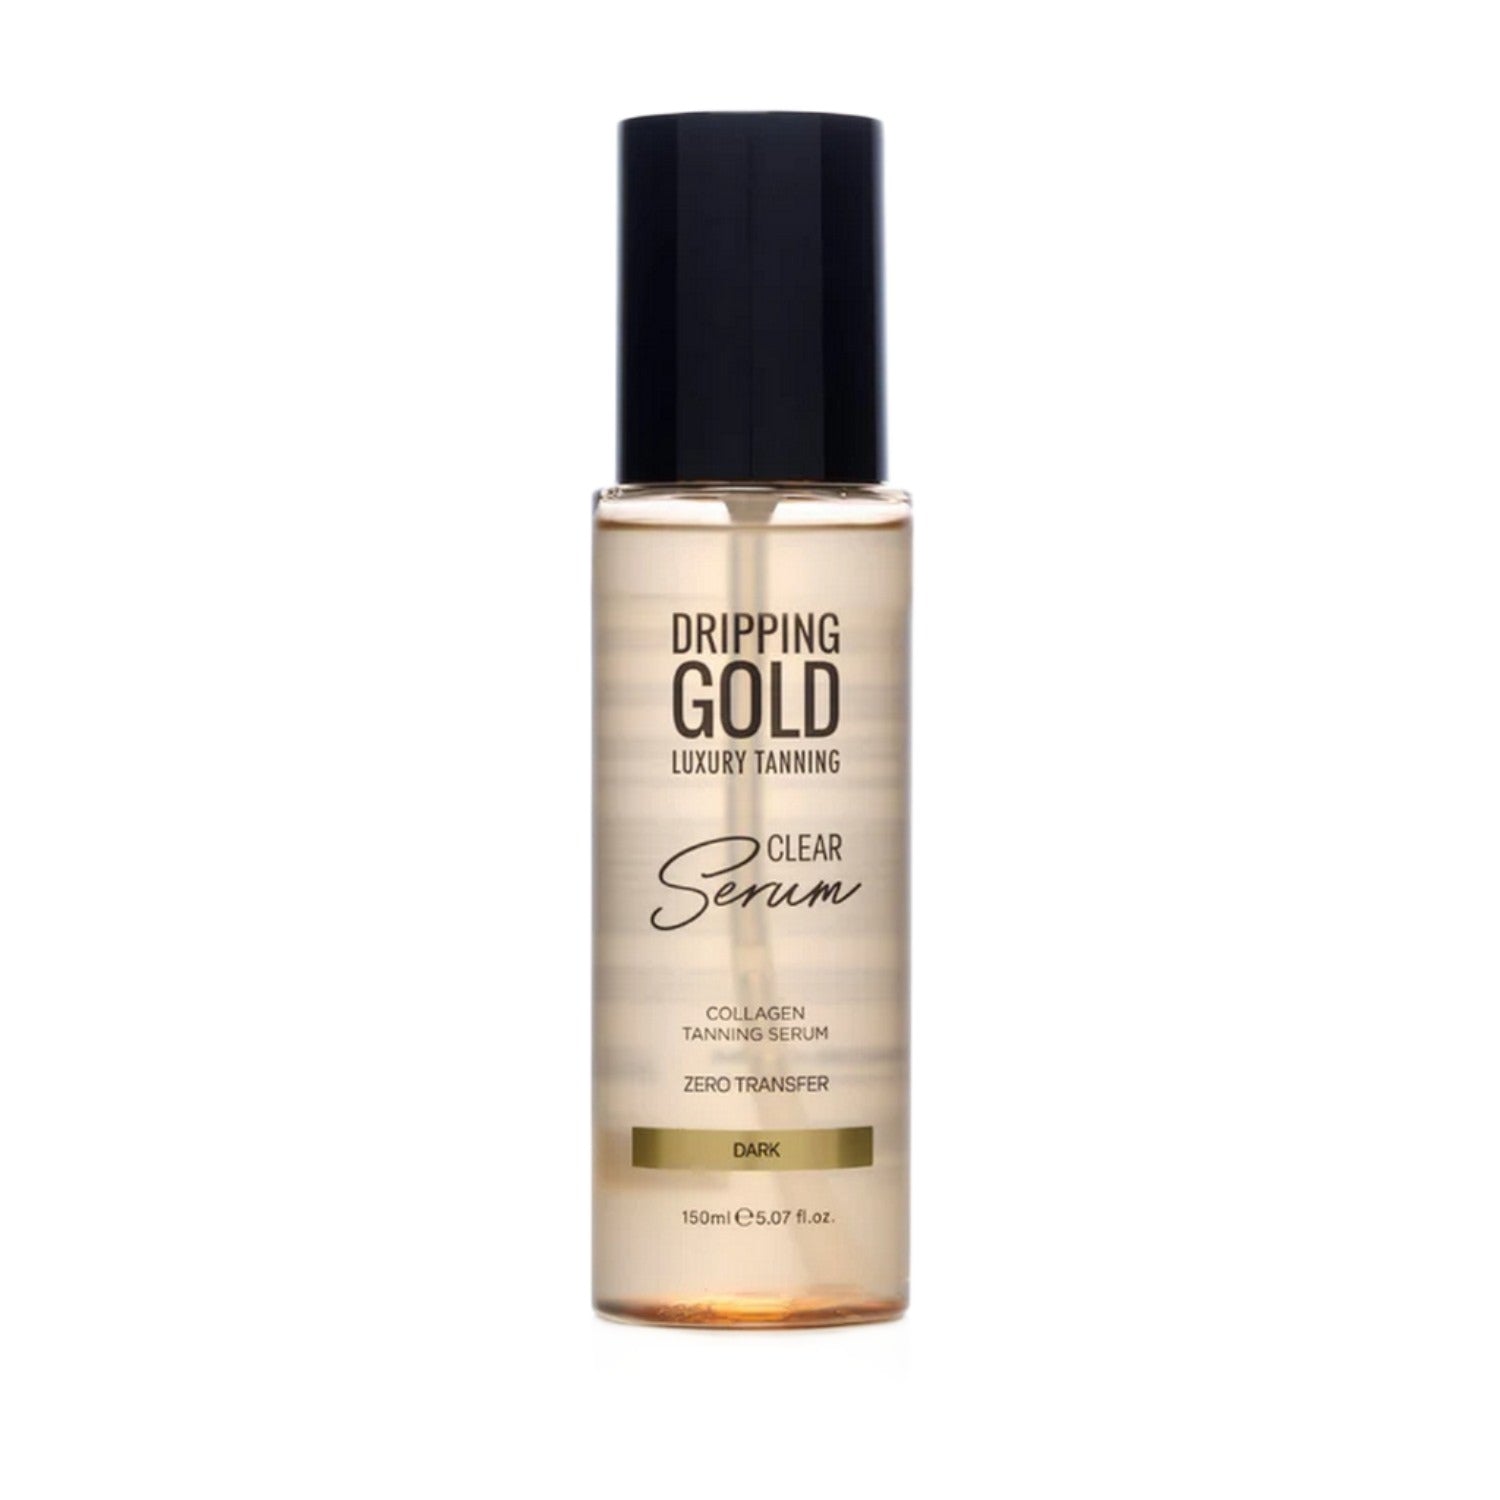 Sosu Dripping Gold Clear Tanning Serum Dark 150ML